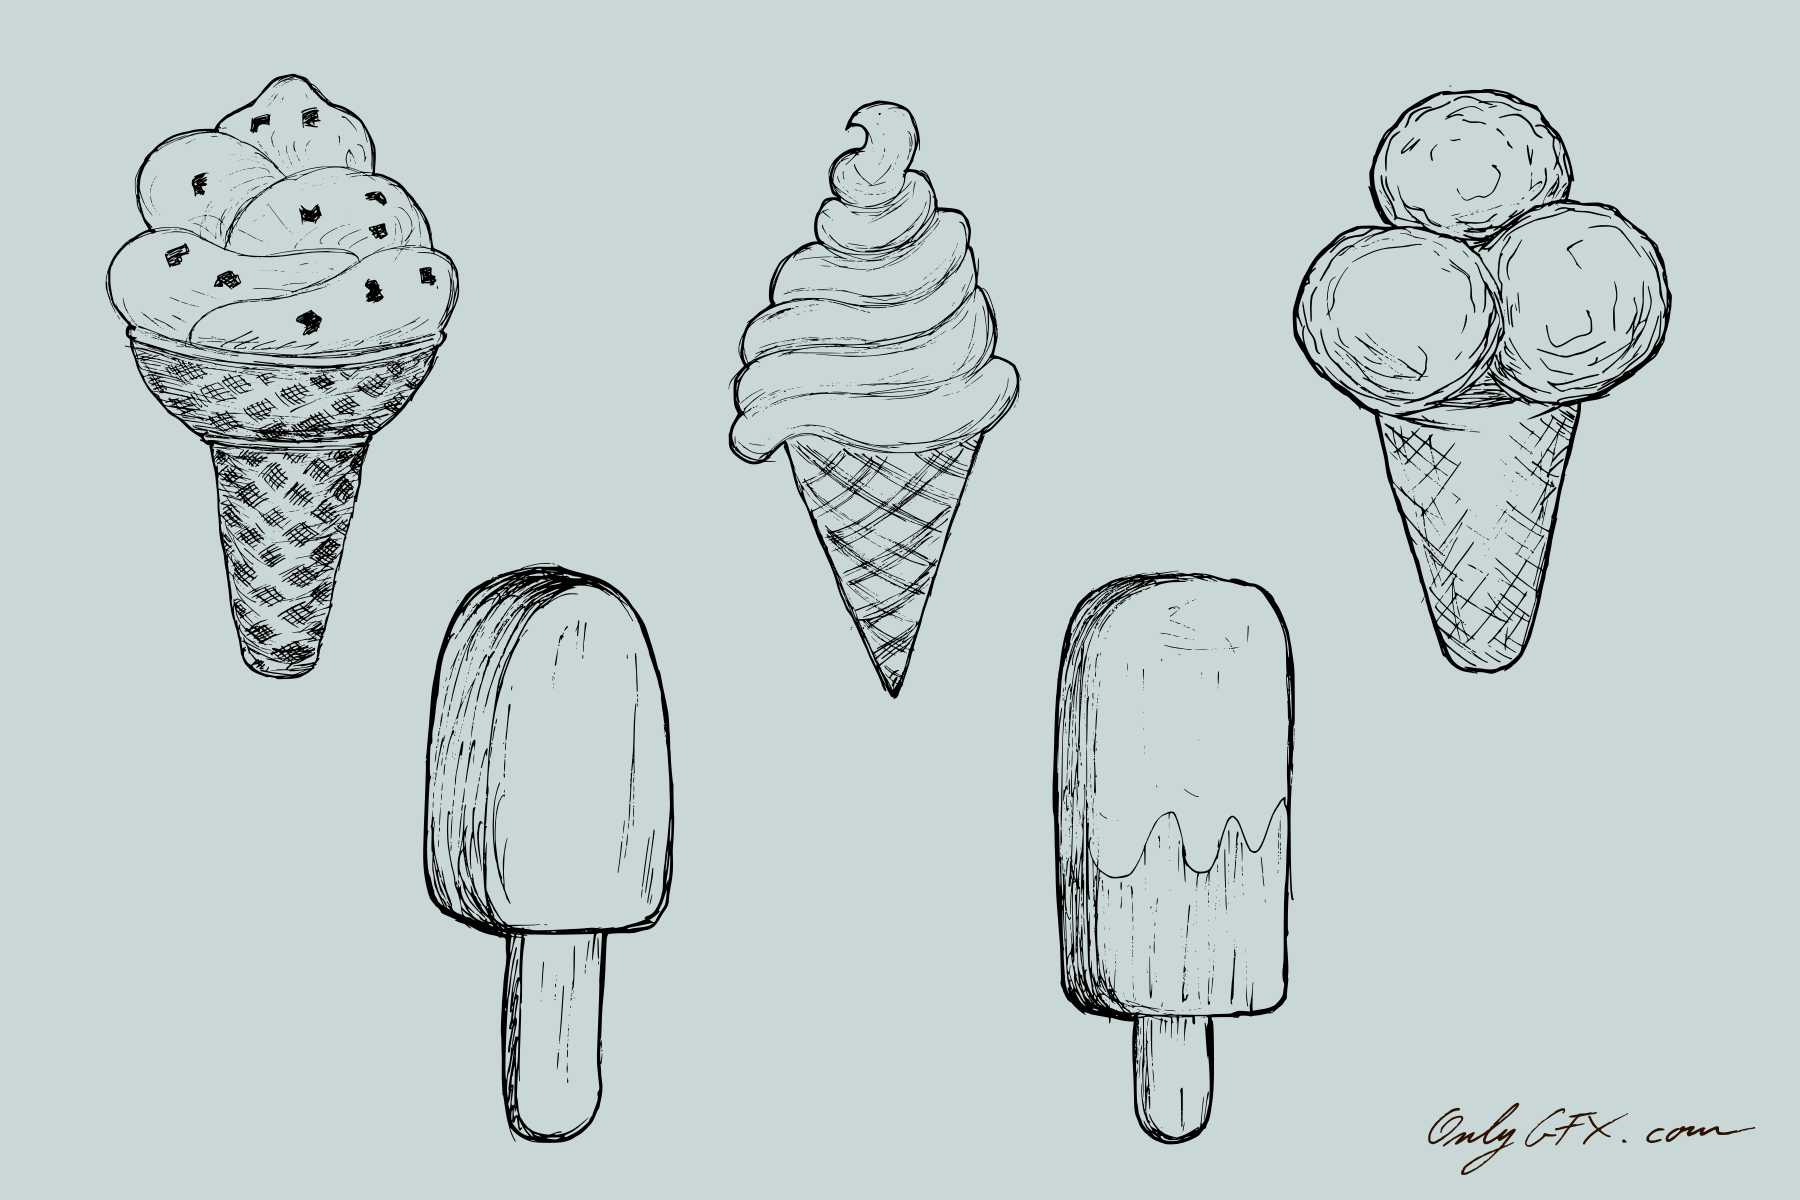 How to Draw Ice Cream